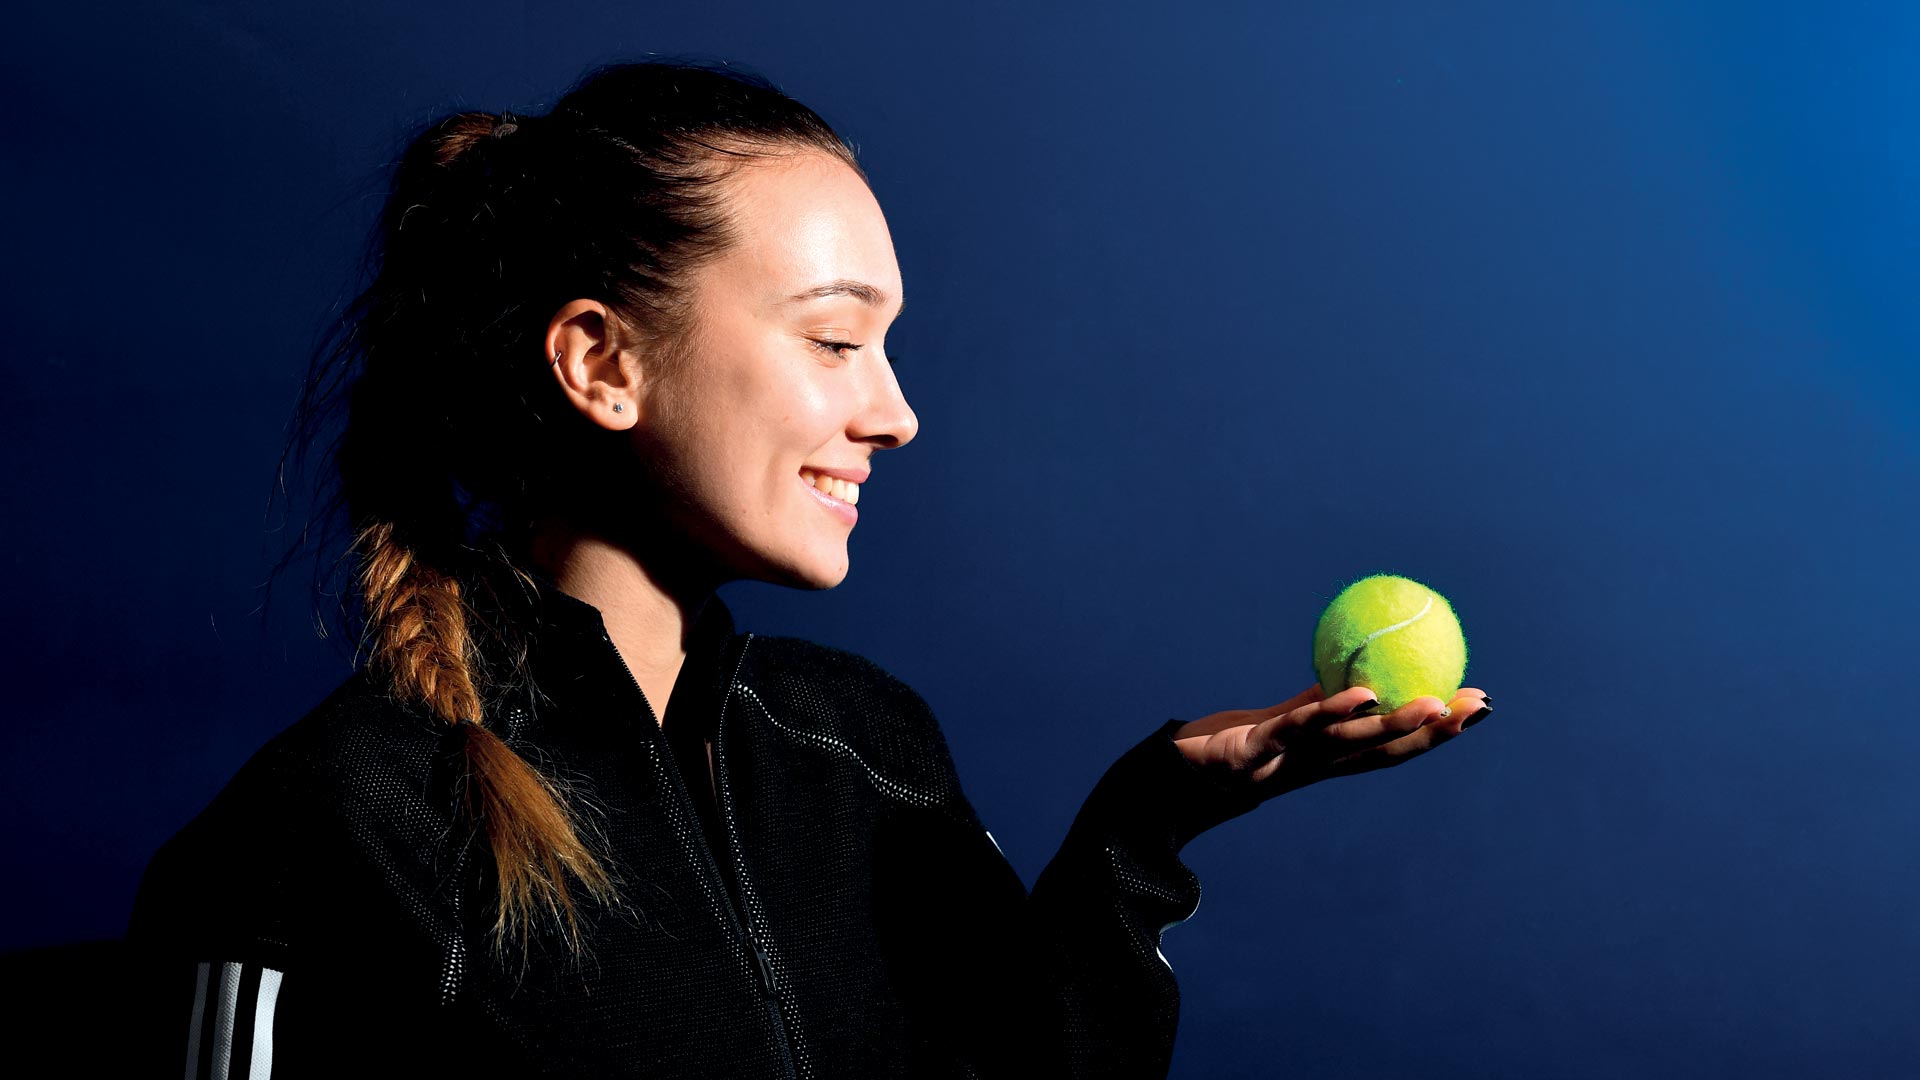 Ngã ngửa người đẹp tennis được nhận 2,25 euro khi thi đấu giải quốc tế tại Czech